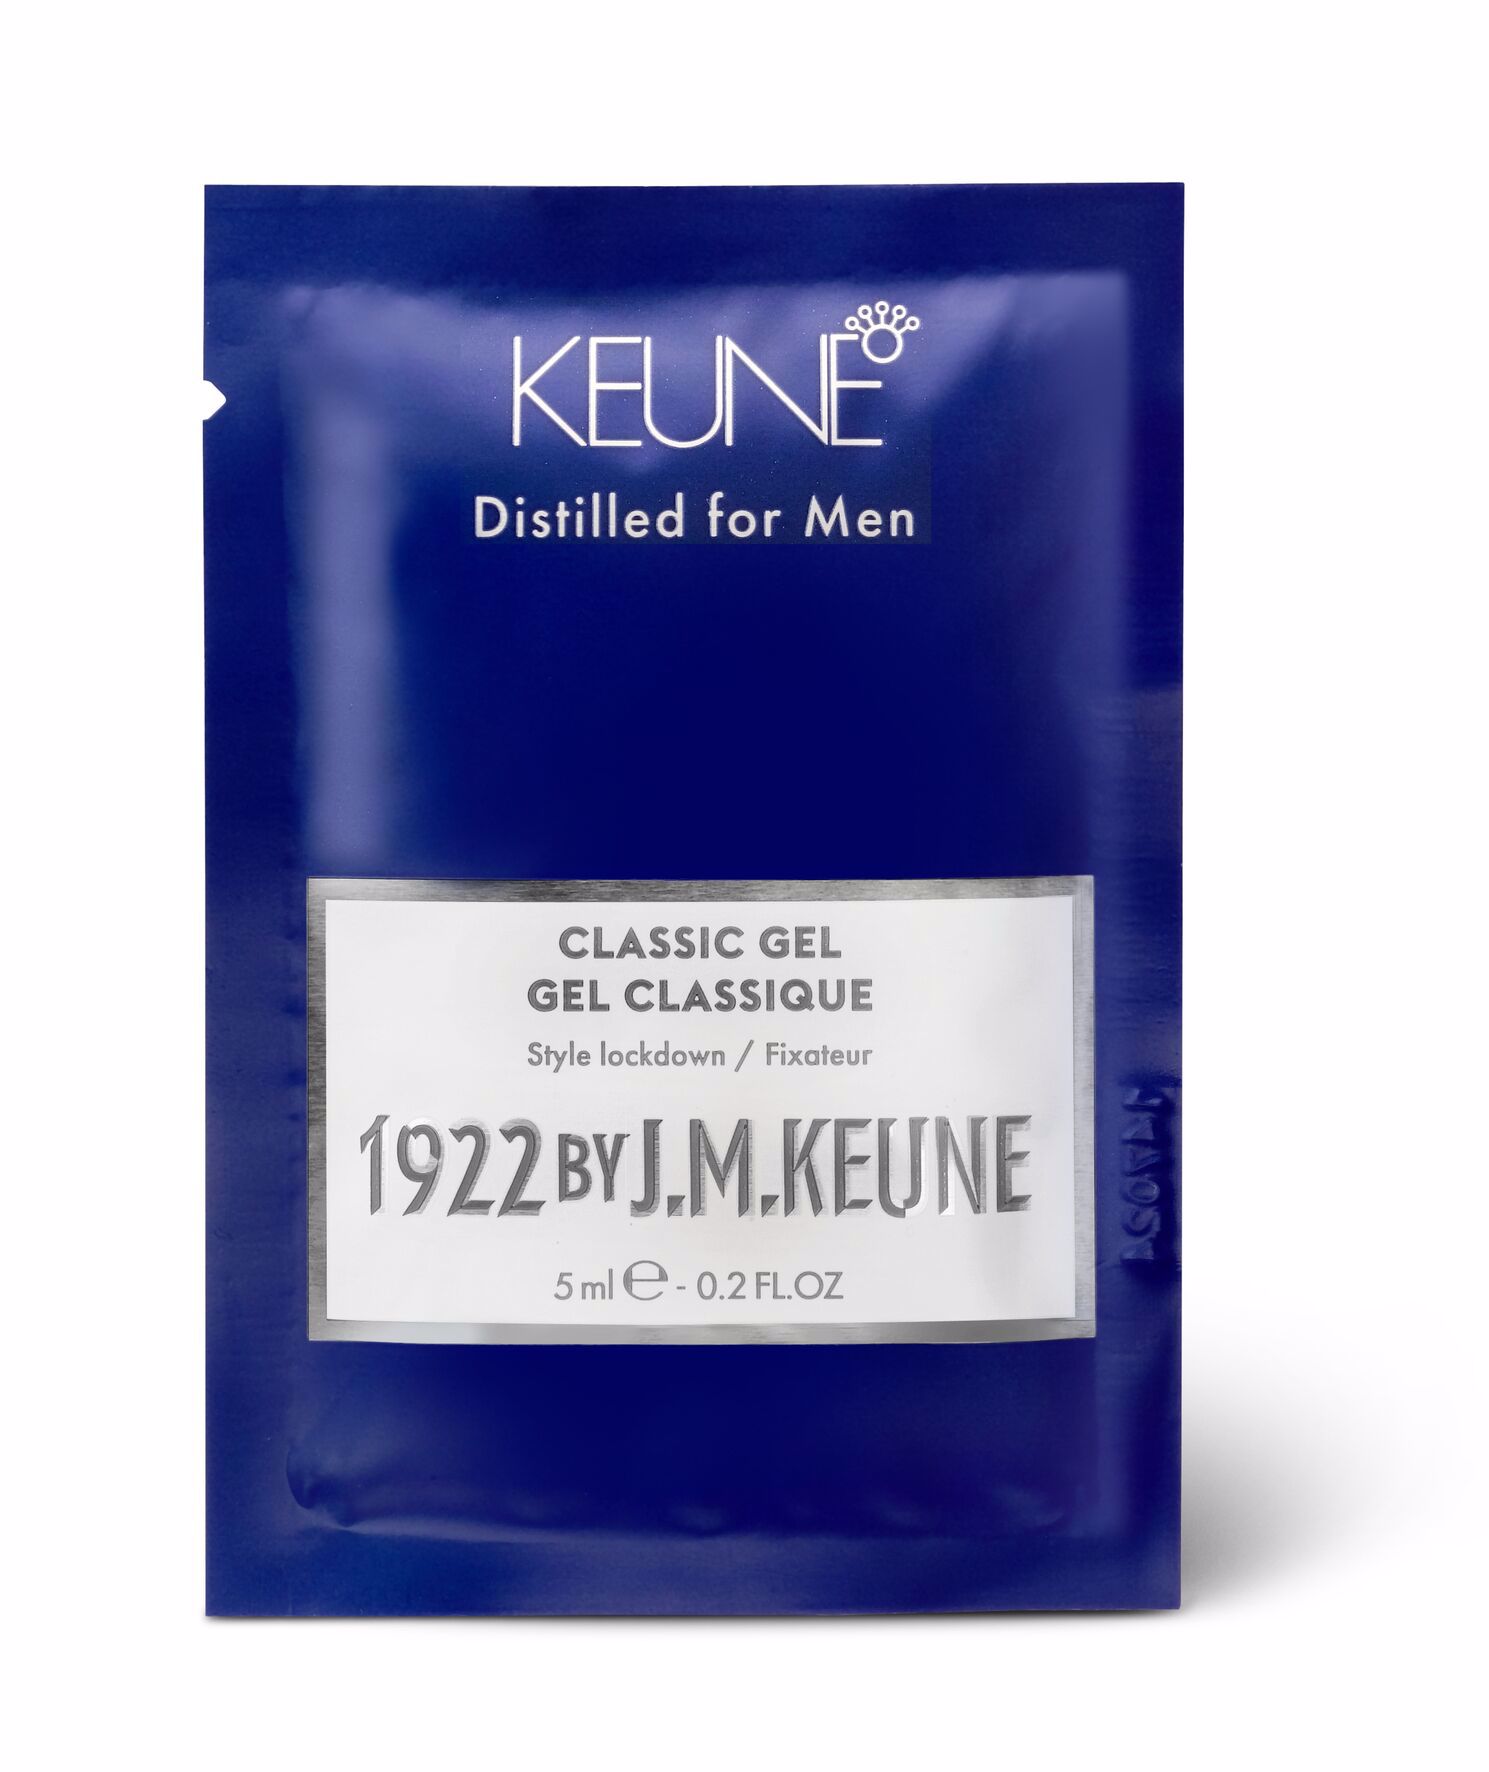 Découvrez notre Classic Gel sur keune.ch. Un gel capillaire spécialement conçu pour les hommes, avec un parfum agréable, une brillance naturelle et une fixation fiable.